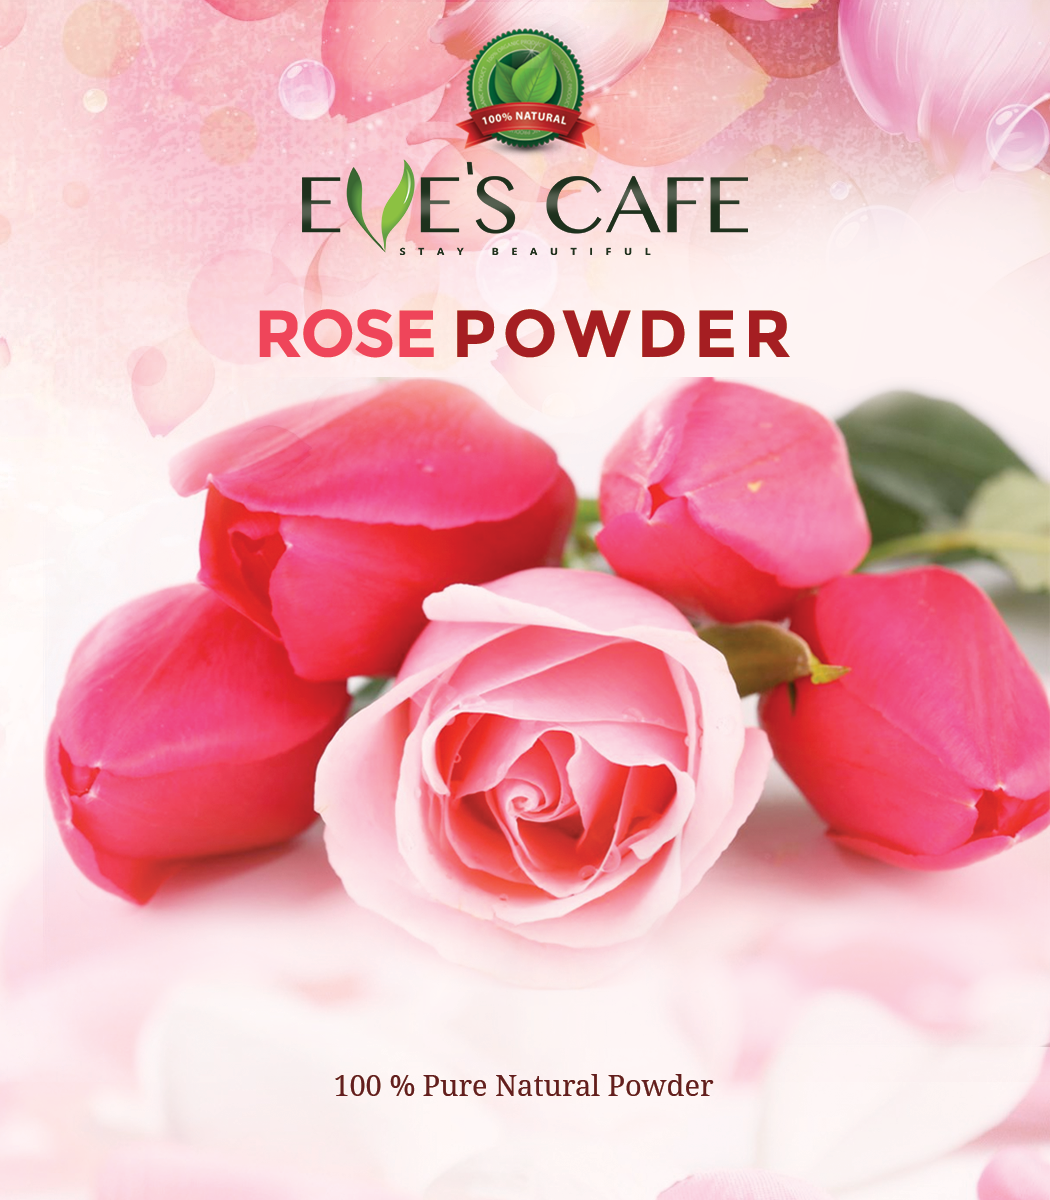 Rose Powder